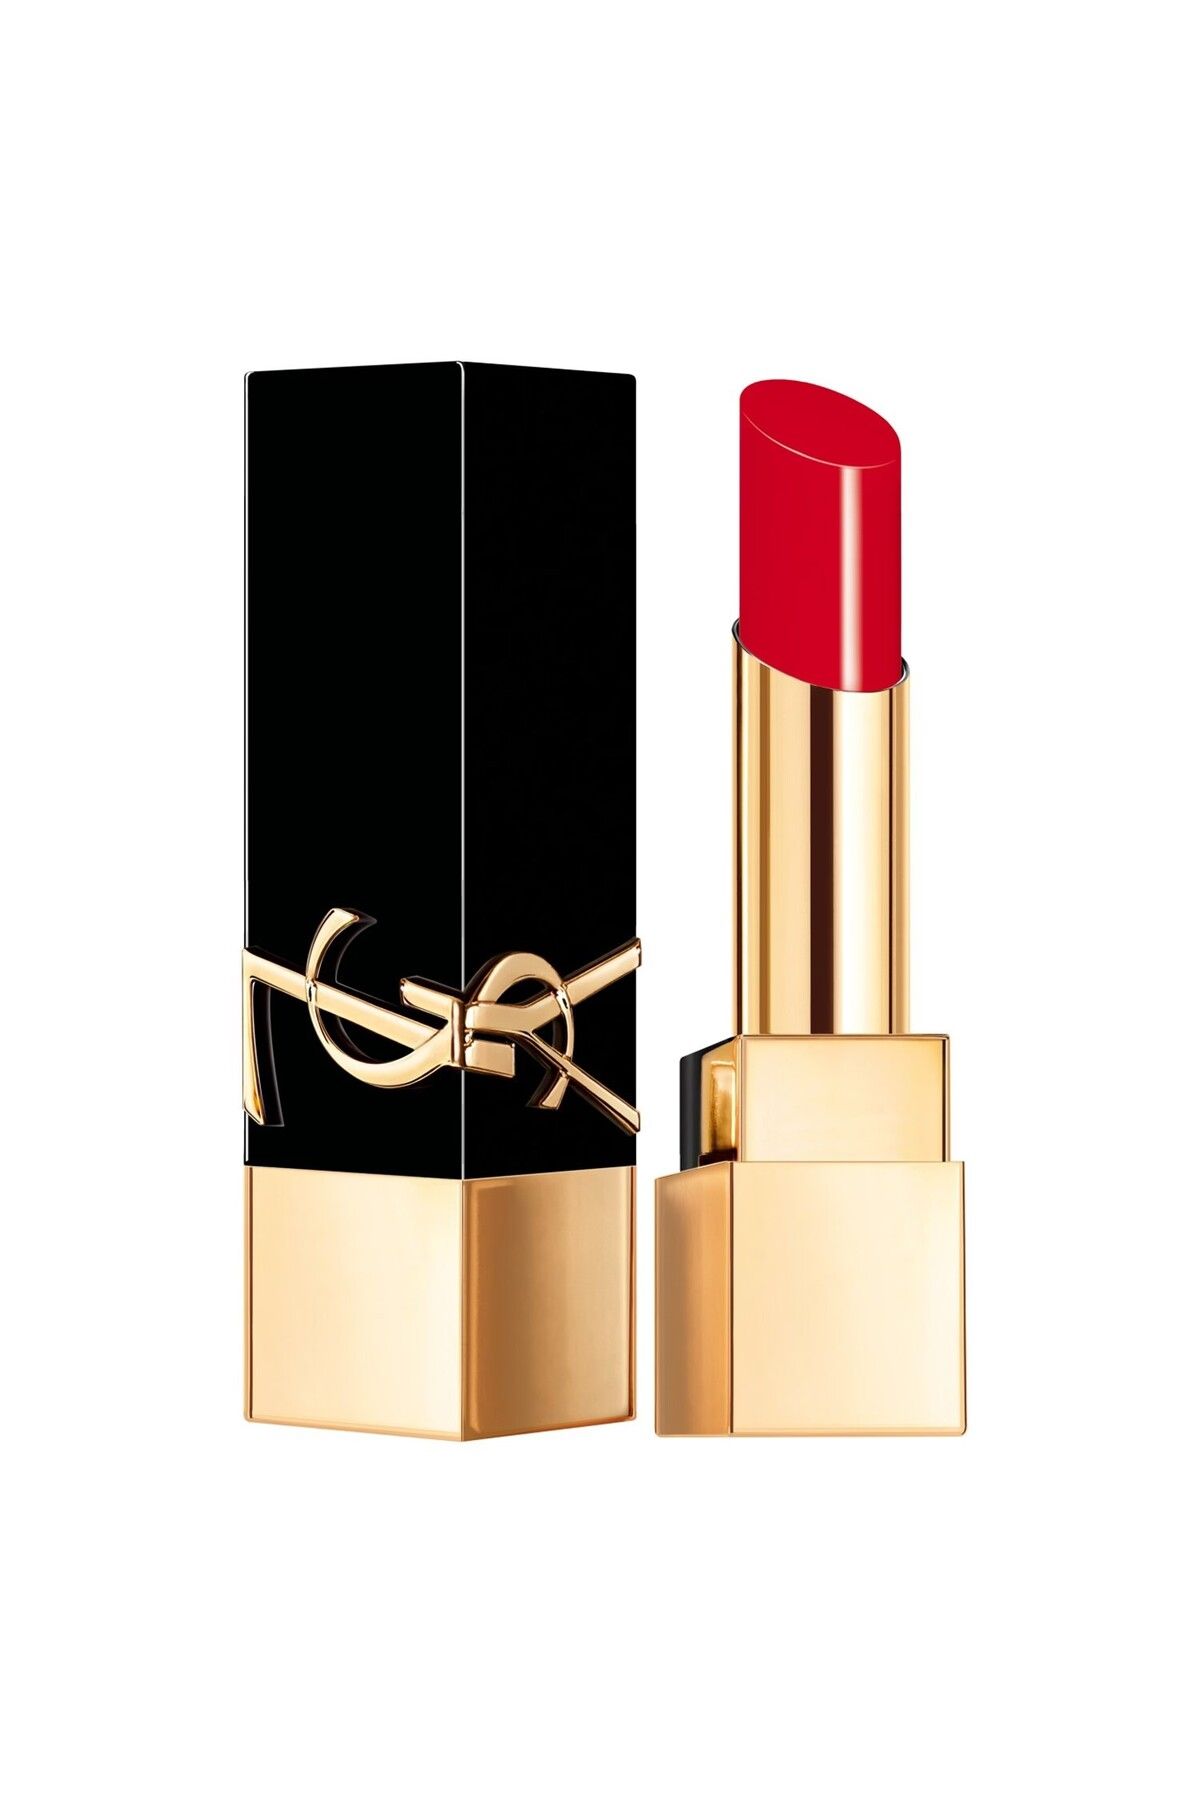 Yves Saint Laurent Rouge Pur Couture The Bold - Tüm Gün Süren Yoğun Renkli, Rahatça Sürülen Işıltılı İkonik Ruj 2.8 gr